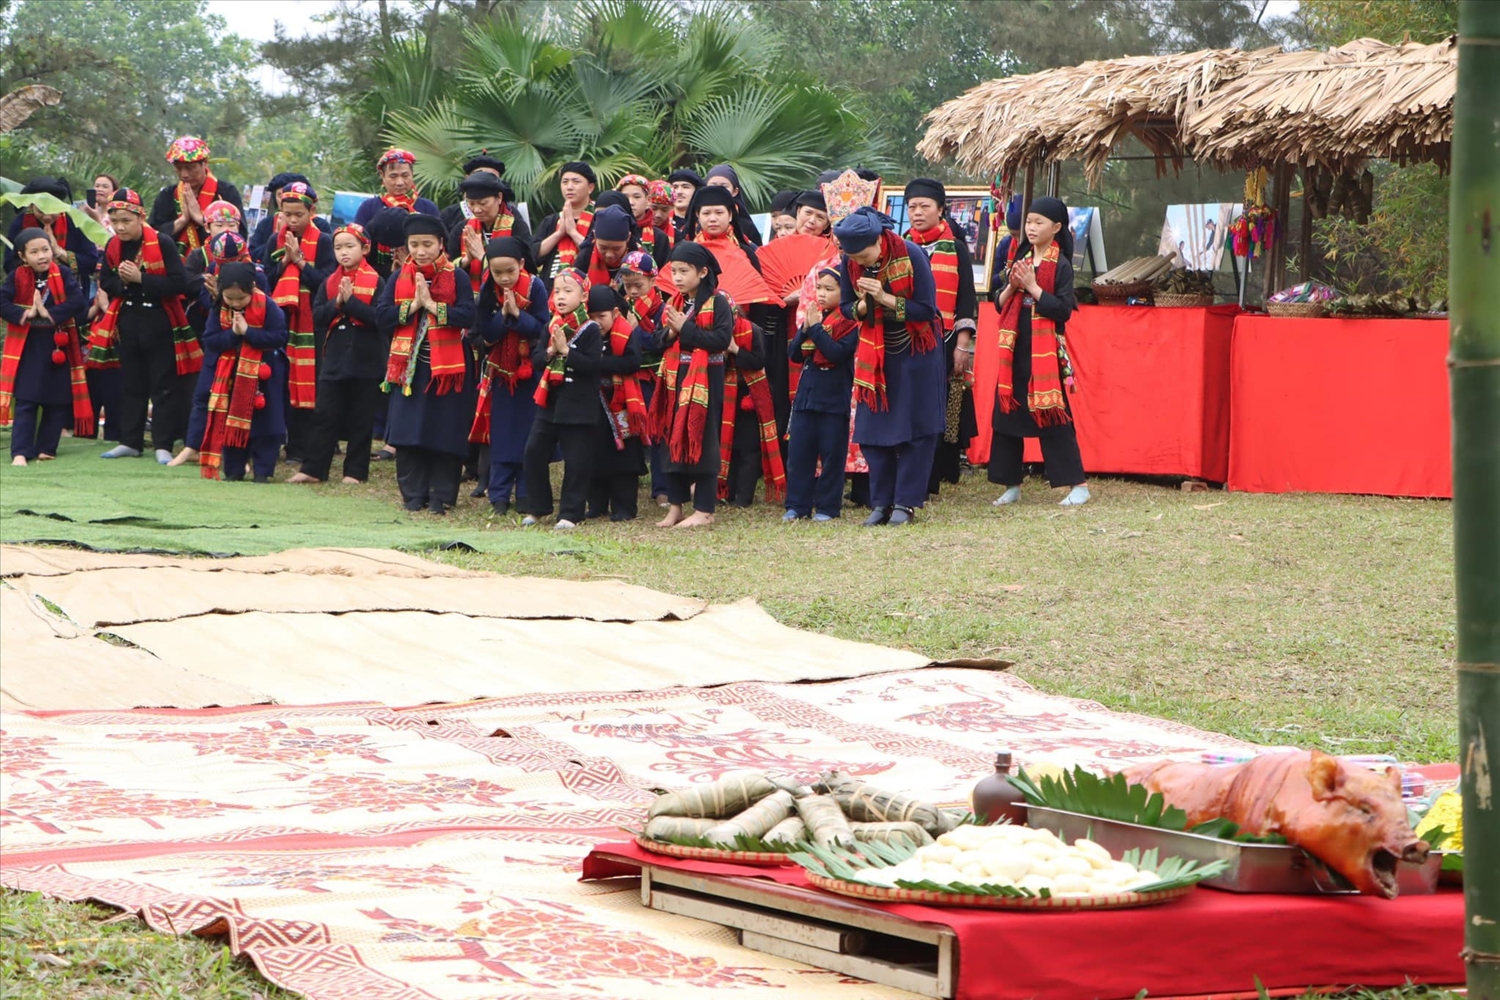 Lễ hội Lồng tồng của đồng bào Tày, Nùng được tái hiện tại Làng Văn hóa, du lịch các dân tộc Việt Nam thu hút đông đảo du khách thăm quan, trải nghiệm